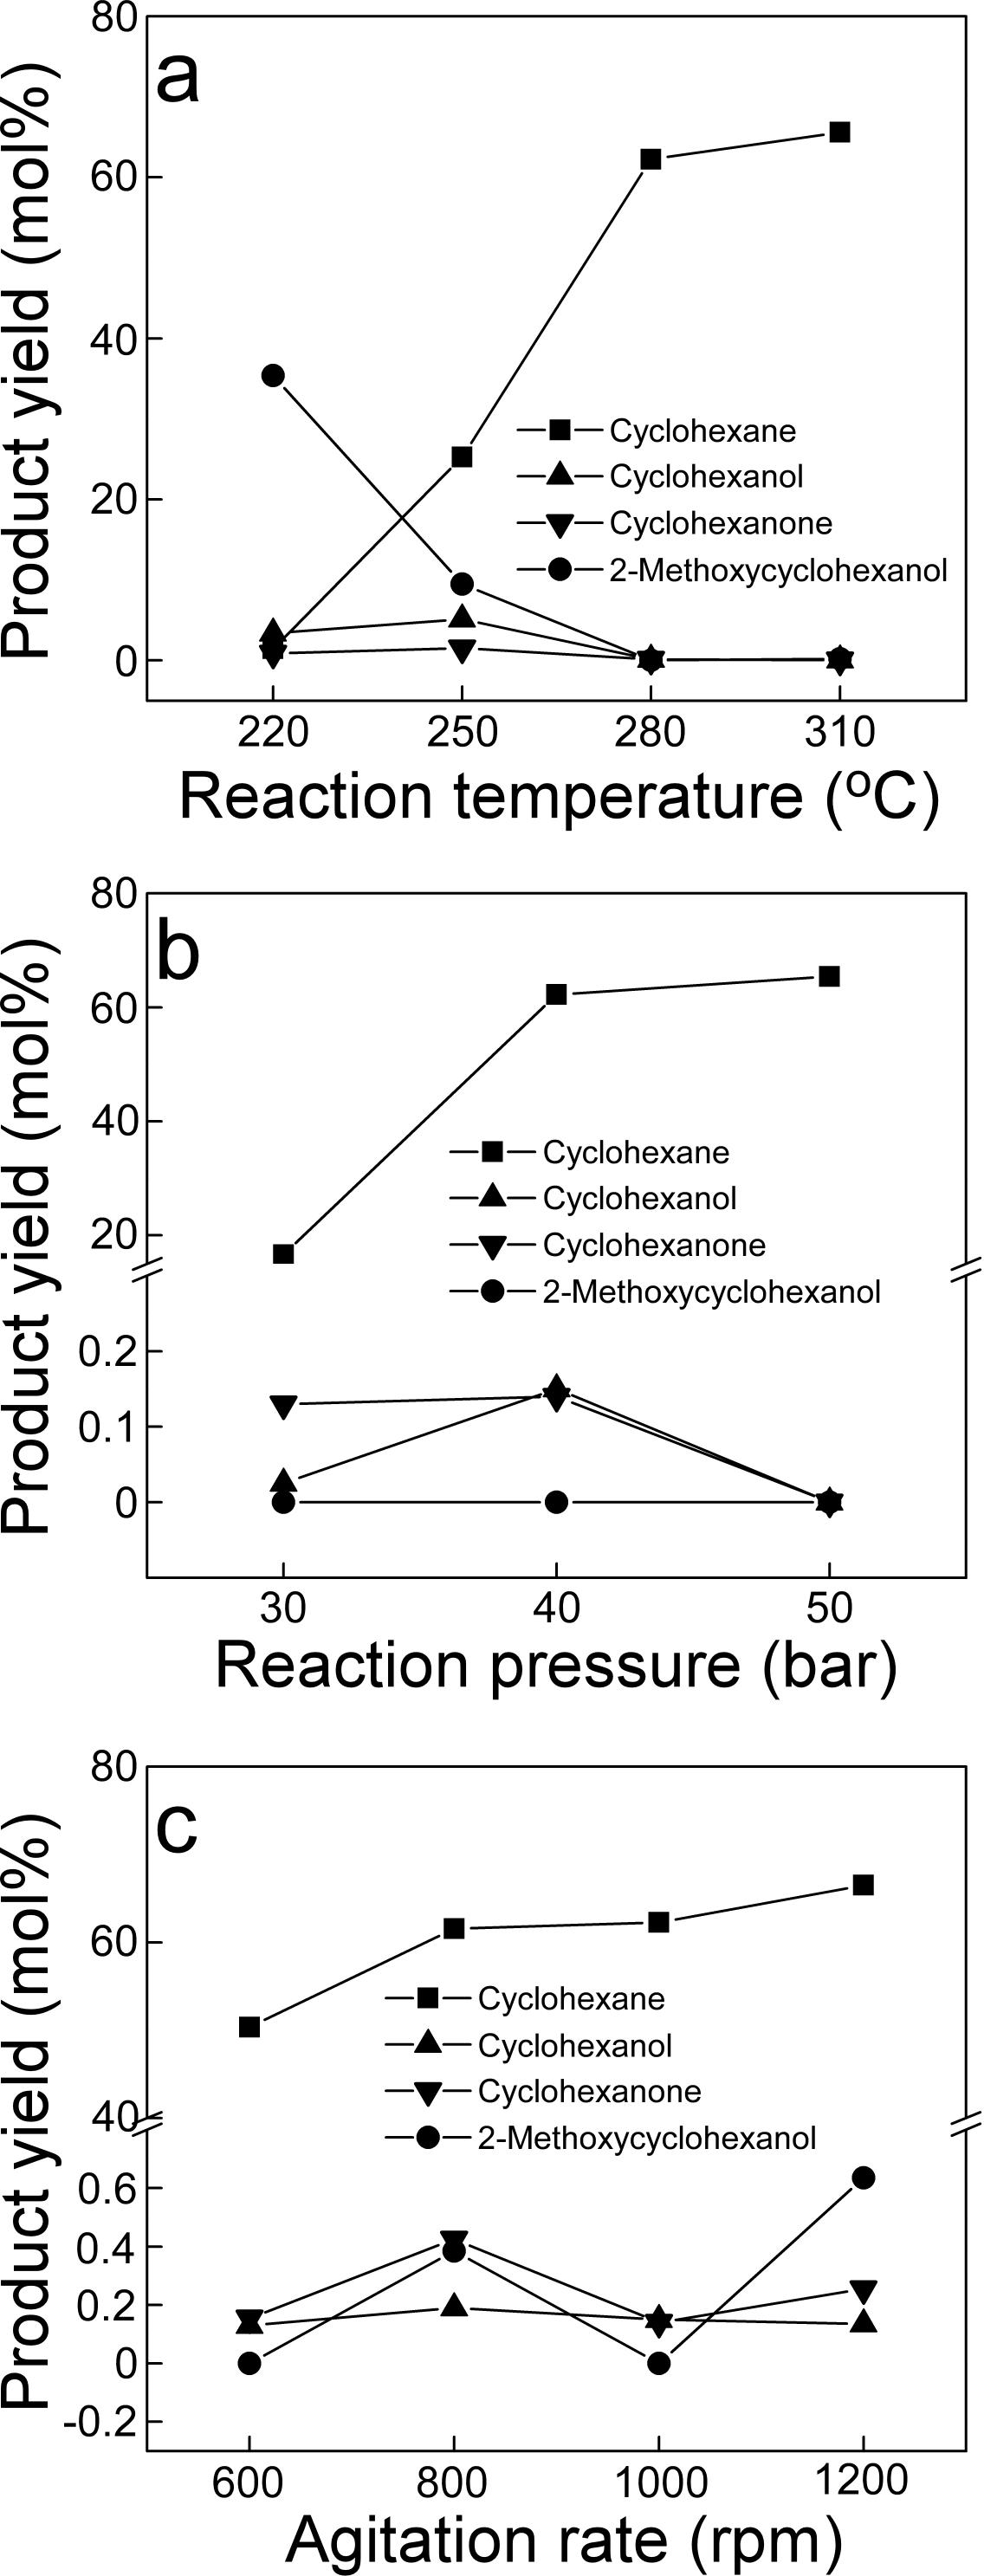 구아이아콜 수첨탈산소반응 (0.1 g의 3 wt% Rh/SiAl 촉매 이용). (a) 반응온도 변화(40 bar, 1000 rpm), (b) 반응압력 변화(280 oC, 1000 rpm), (c) 교반속도 변화(280 oC, 40 bar).